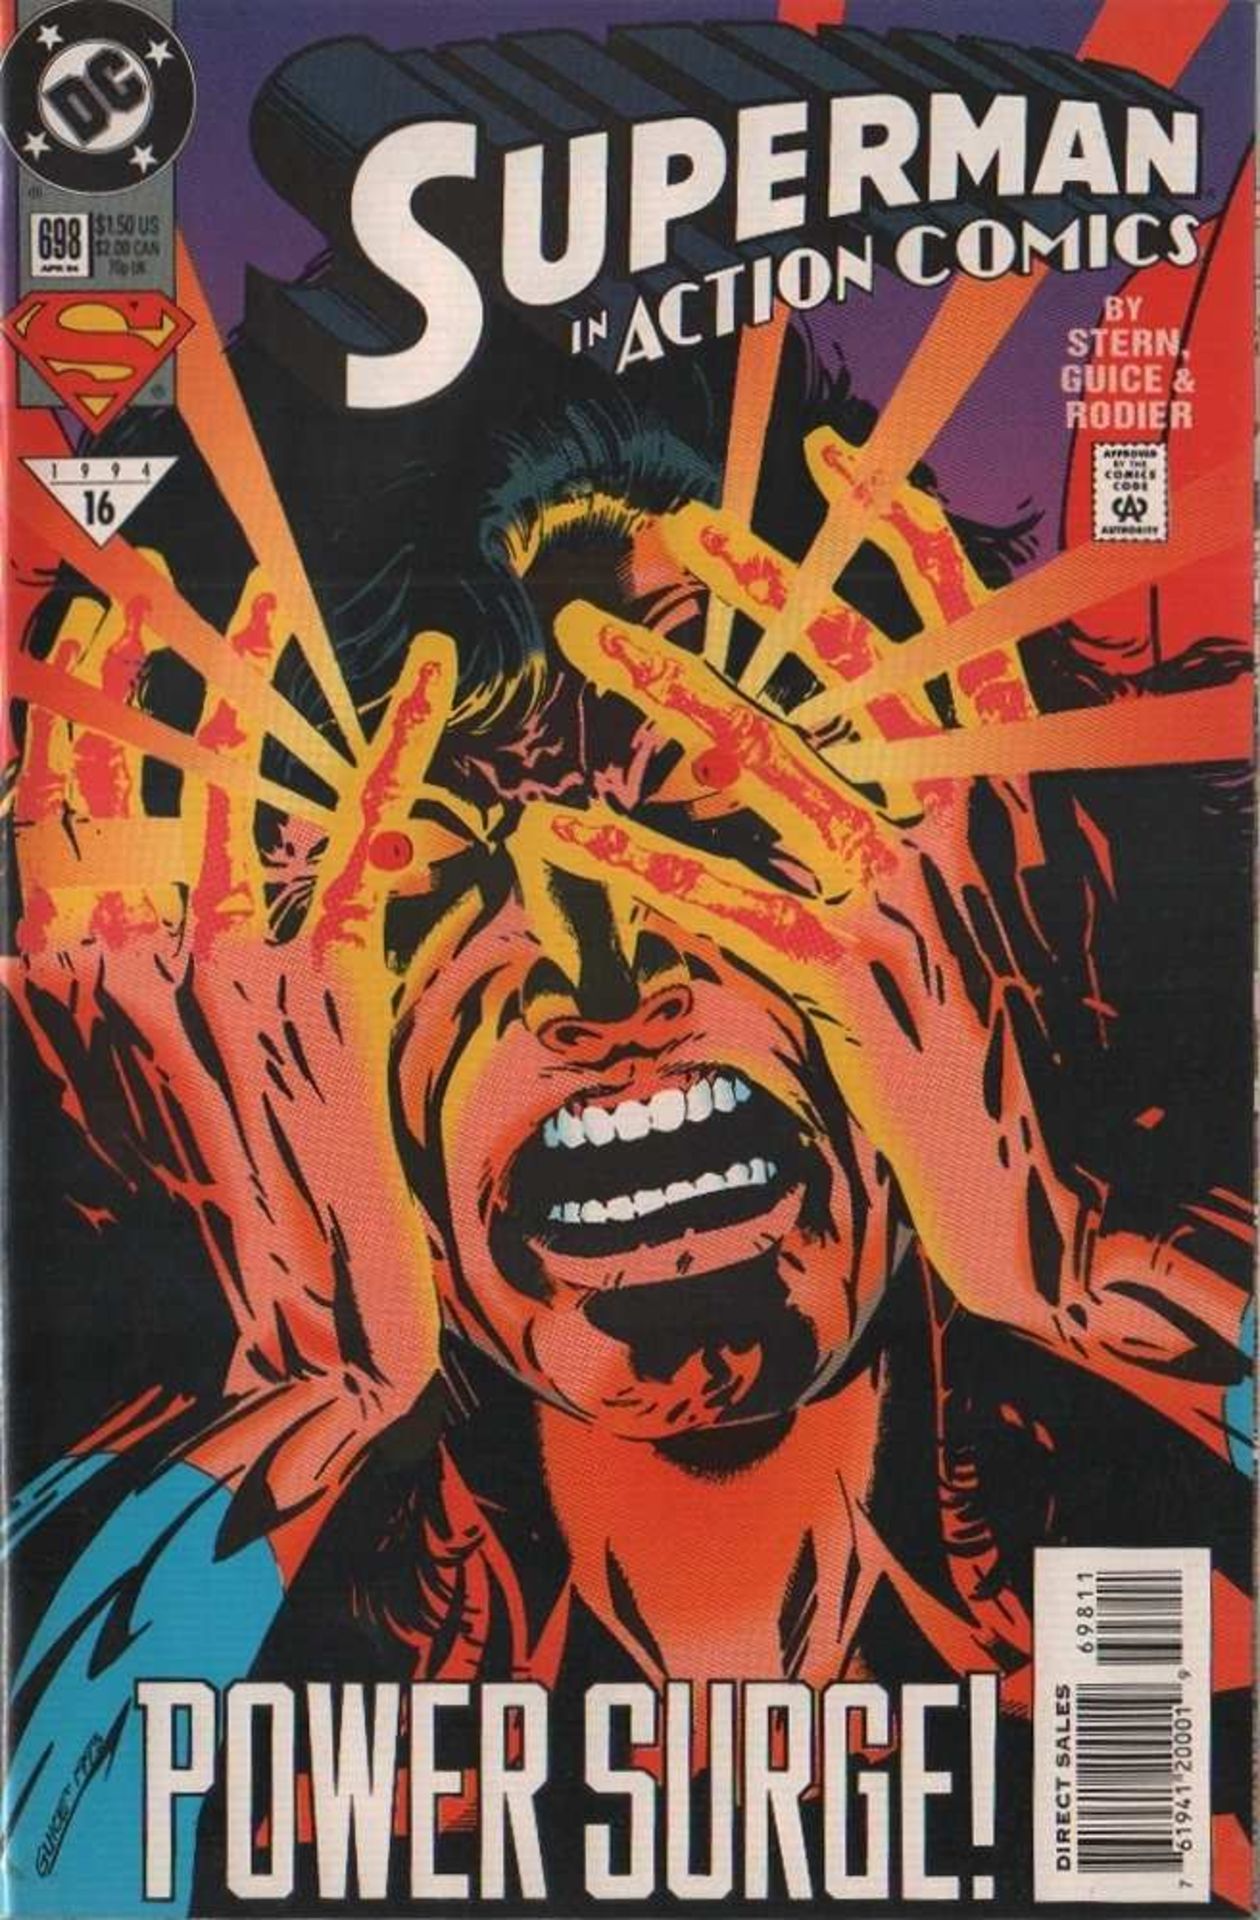 Action Comics. DC. Konvolut mit von 5 Heften: Nr. 696, 698, 699, 703 und 704. Erscheinungsjahr 1994. - Image 6 of 7